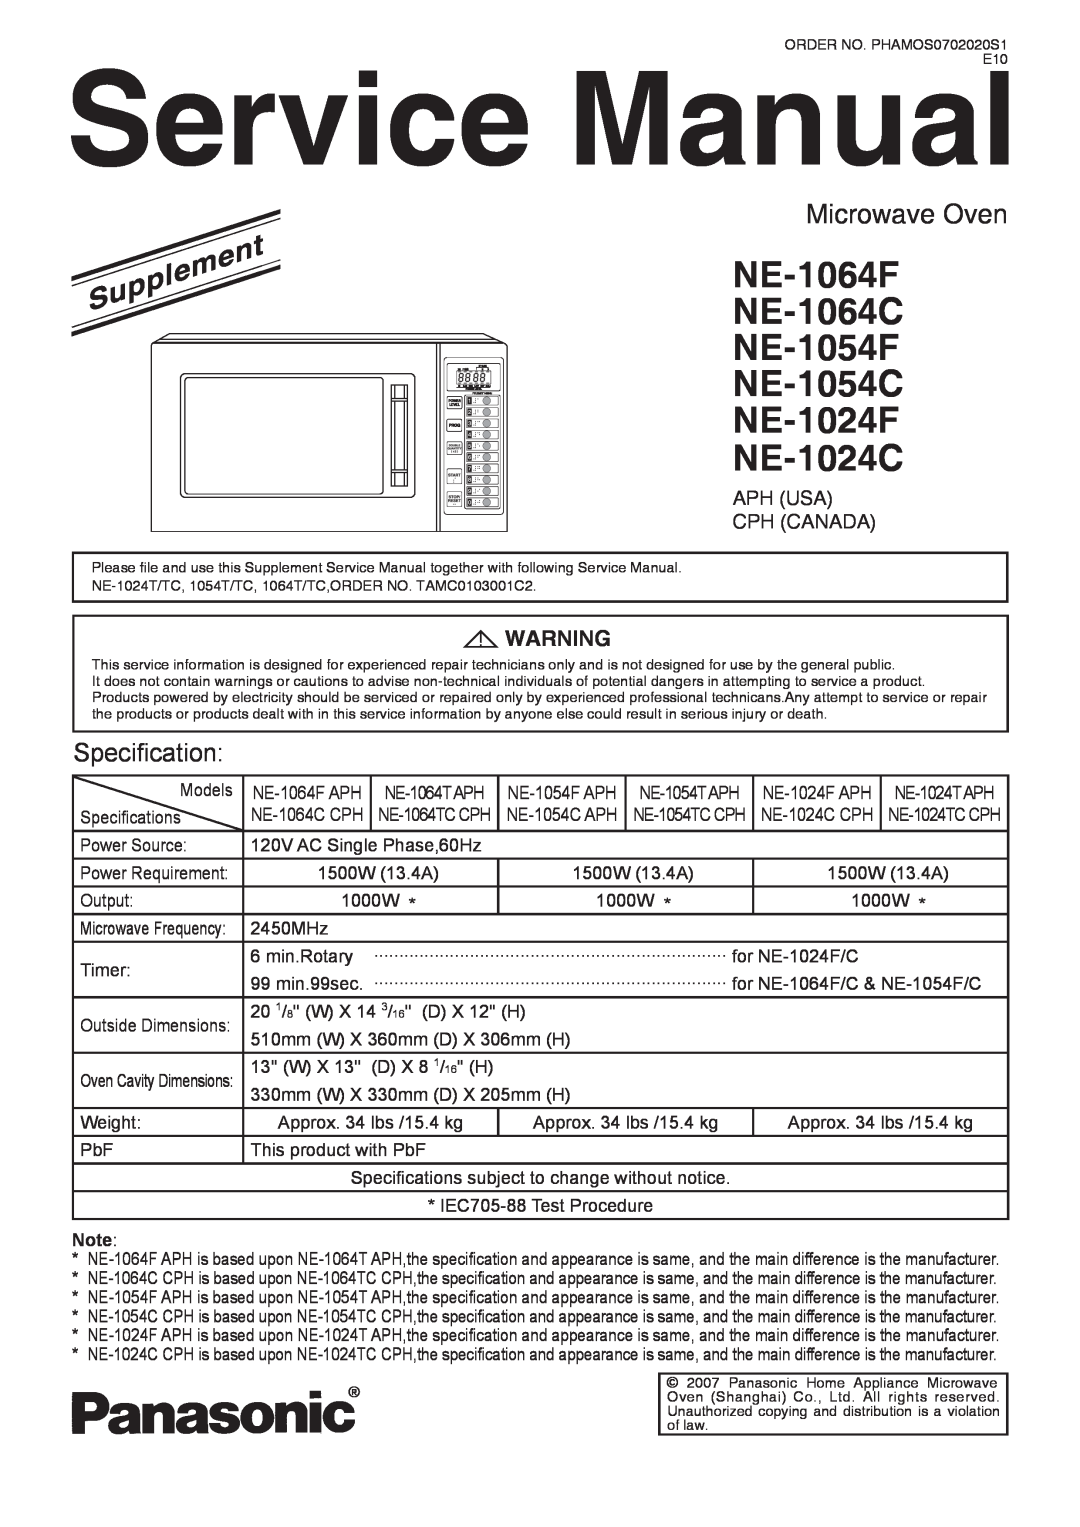 Panasonic service manual Service ManualE10, NE-1064F NE-1064C NE-1054F NE-1054C NE-1024F NE-1024C, Microwave Oven 